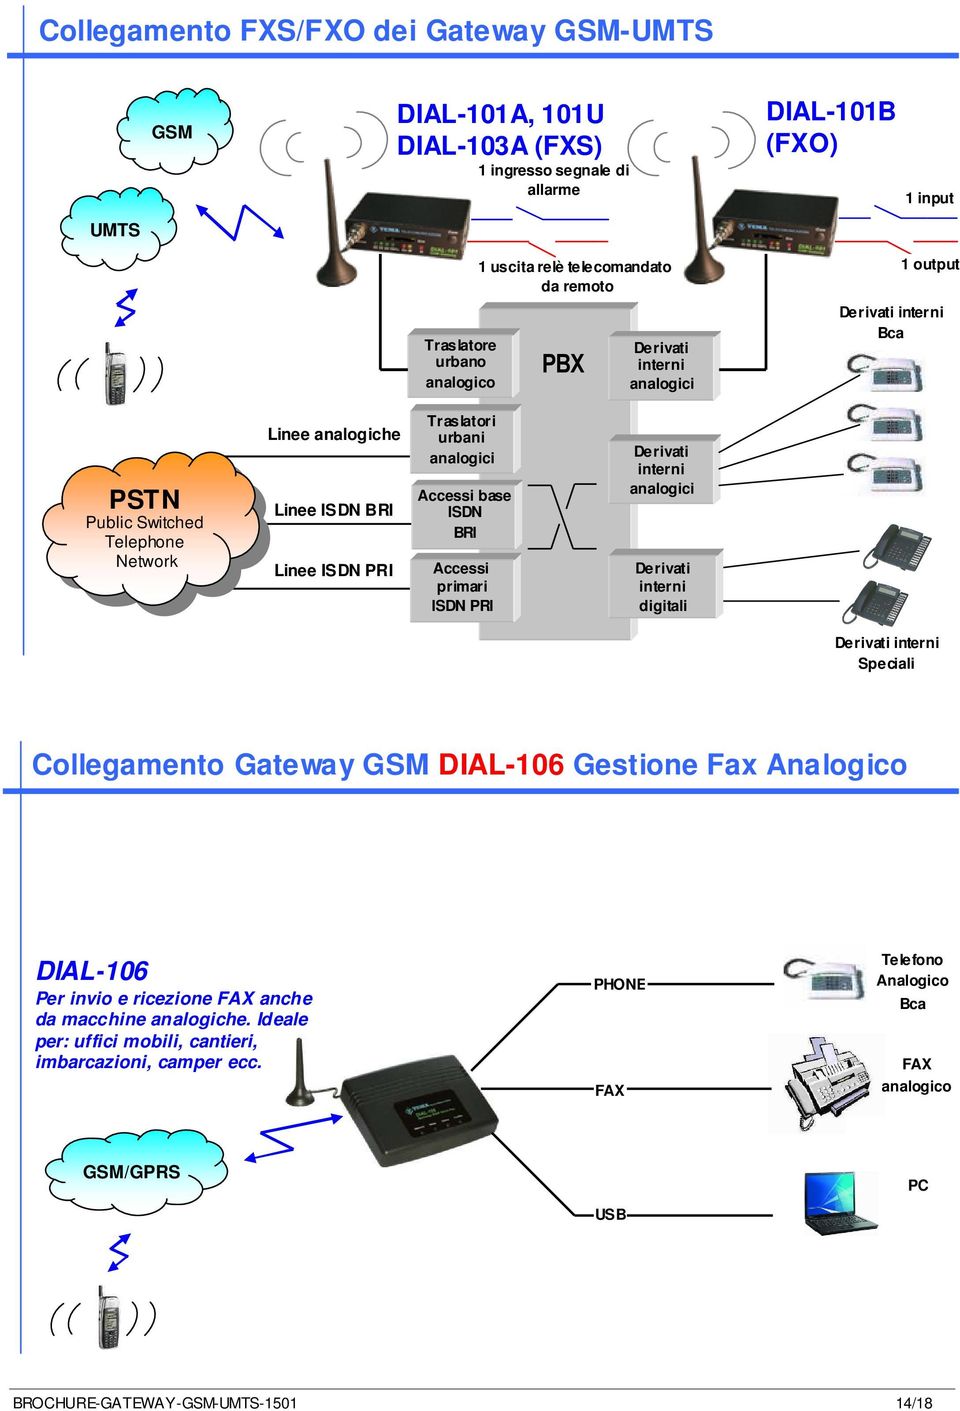 Accessi base ISDN BRI Accessi primari ISDN PRI interni analogici interni digitali interni Speciali Collegamento Gateway GSM DIAL-106 Gestione Fax Analogico DIAL-106 Per invio e